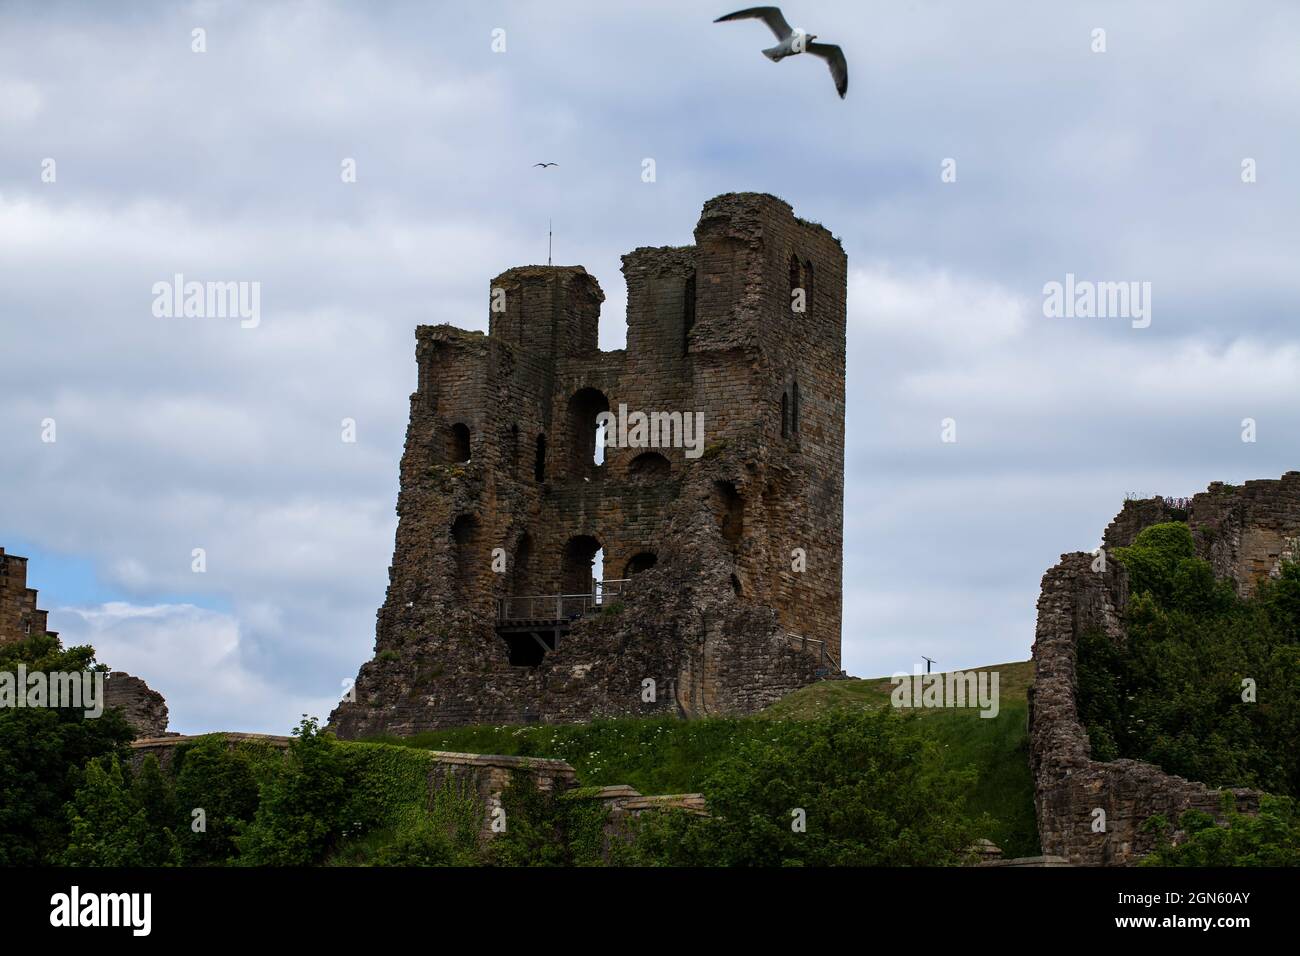 Il Castello di Scarbougough è un'ex fortezza reale medievale situata su un promontorio roccioso che si affaccia sul Mare del Nord, sulla costa inglese. Foto Stock